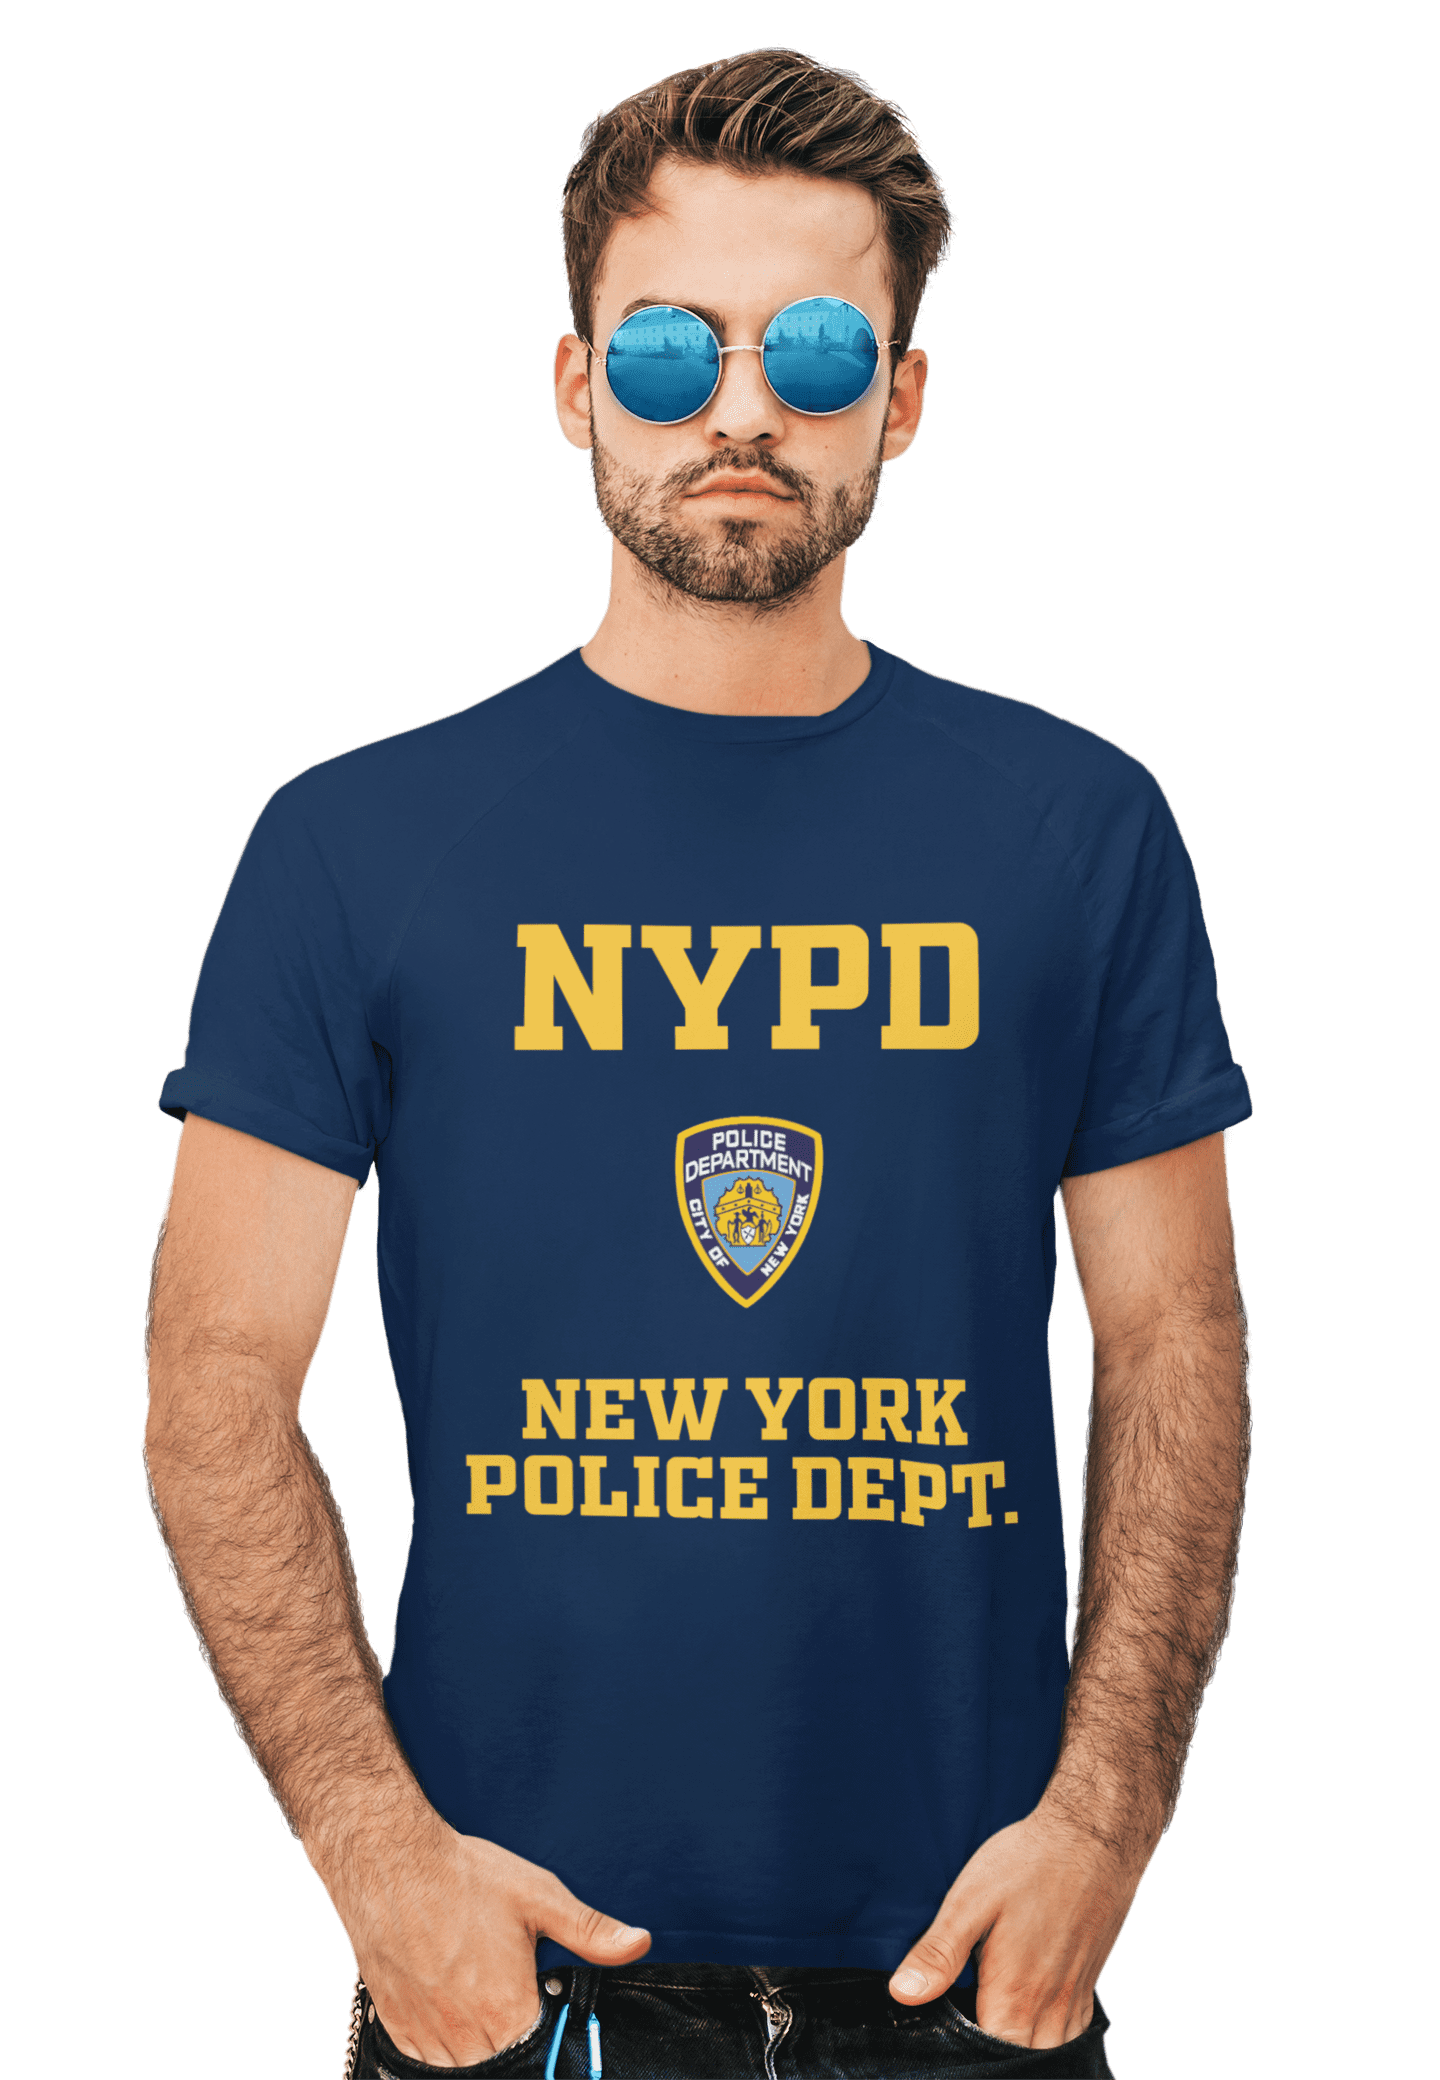 kaos nypd new york police dept.